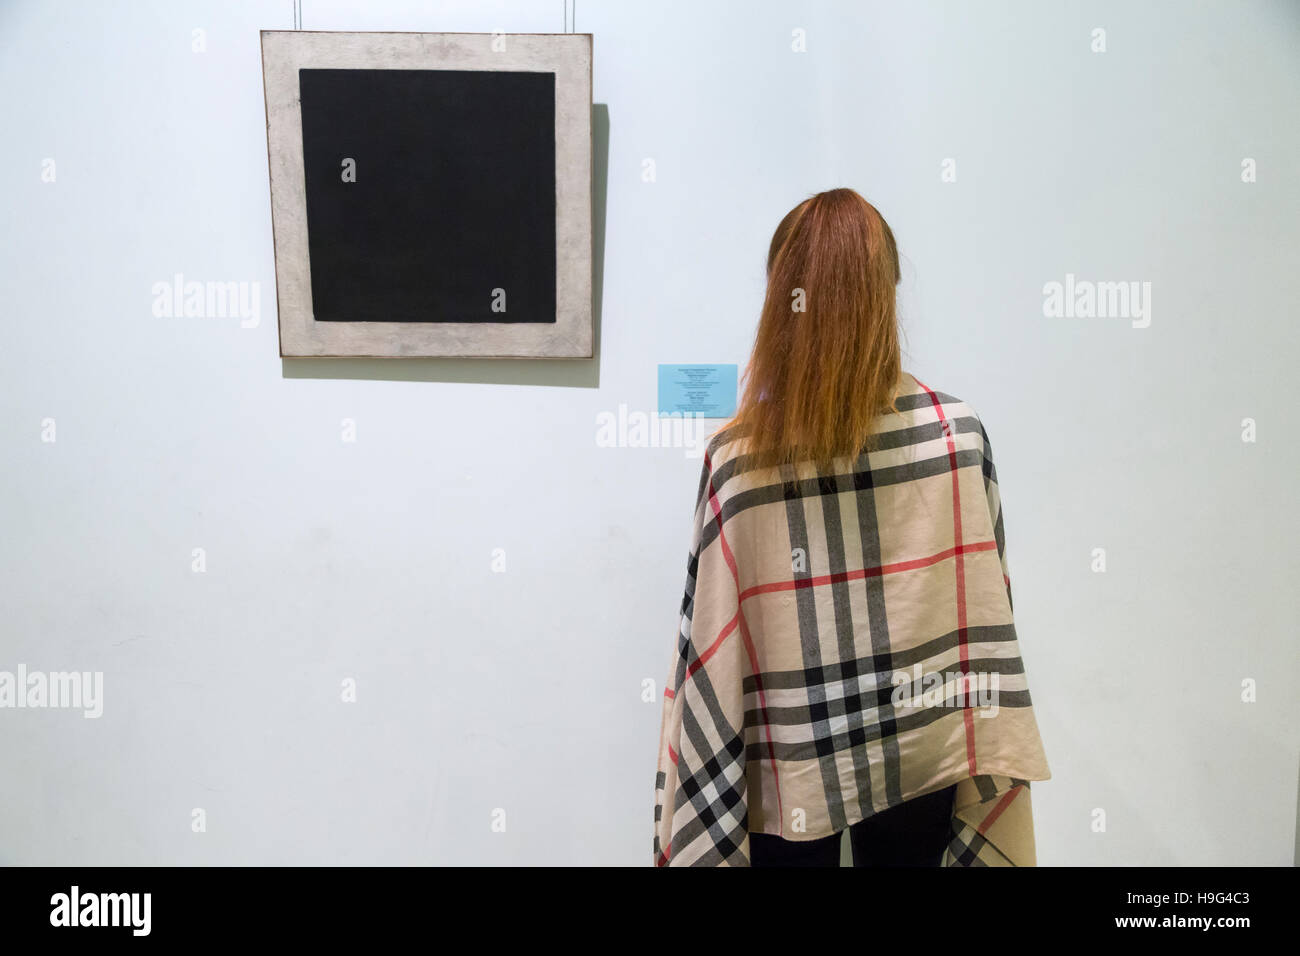 Ein Besucher vor Kazimir Malevichs Malerei "Schwarze suprematistischen Quadrat" in The Hermitage Gallery in St Petersburg, Russland Stockfoto